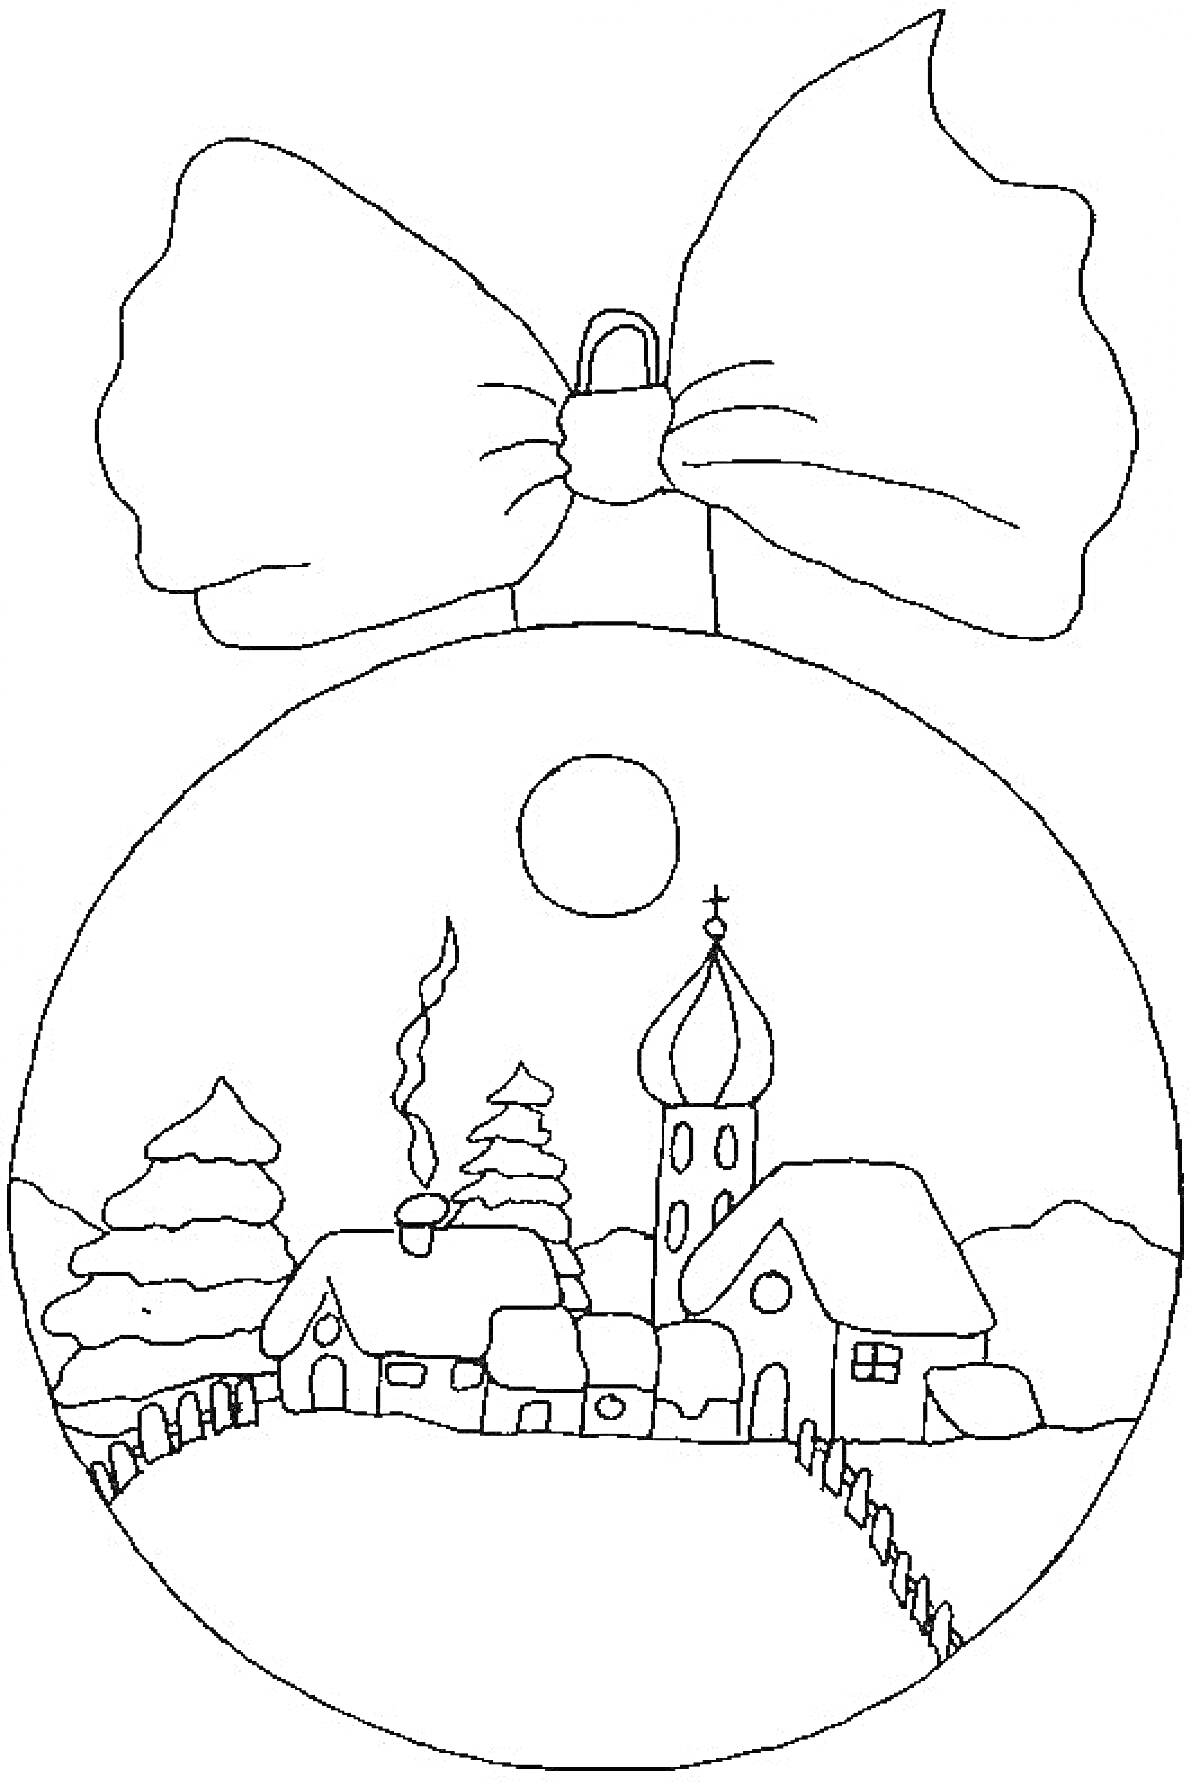  Новогодний шар с деревней, церковью, домиками, соснами, забором, луной и бантом